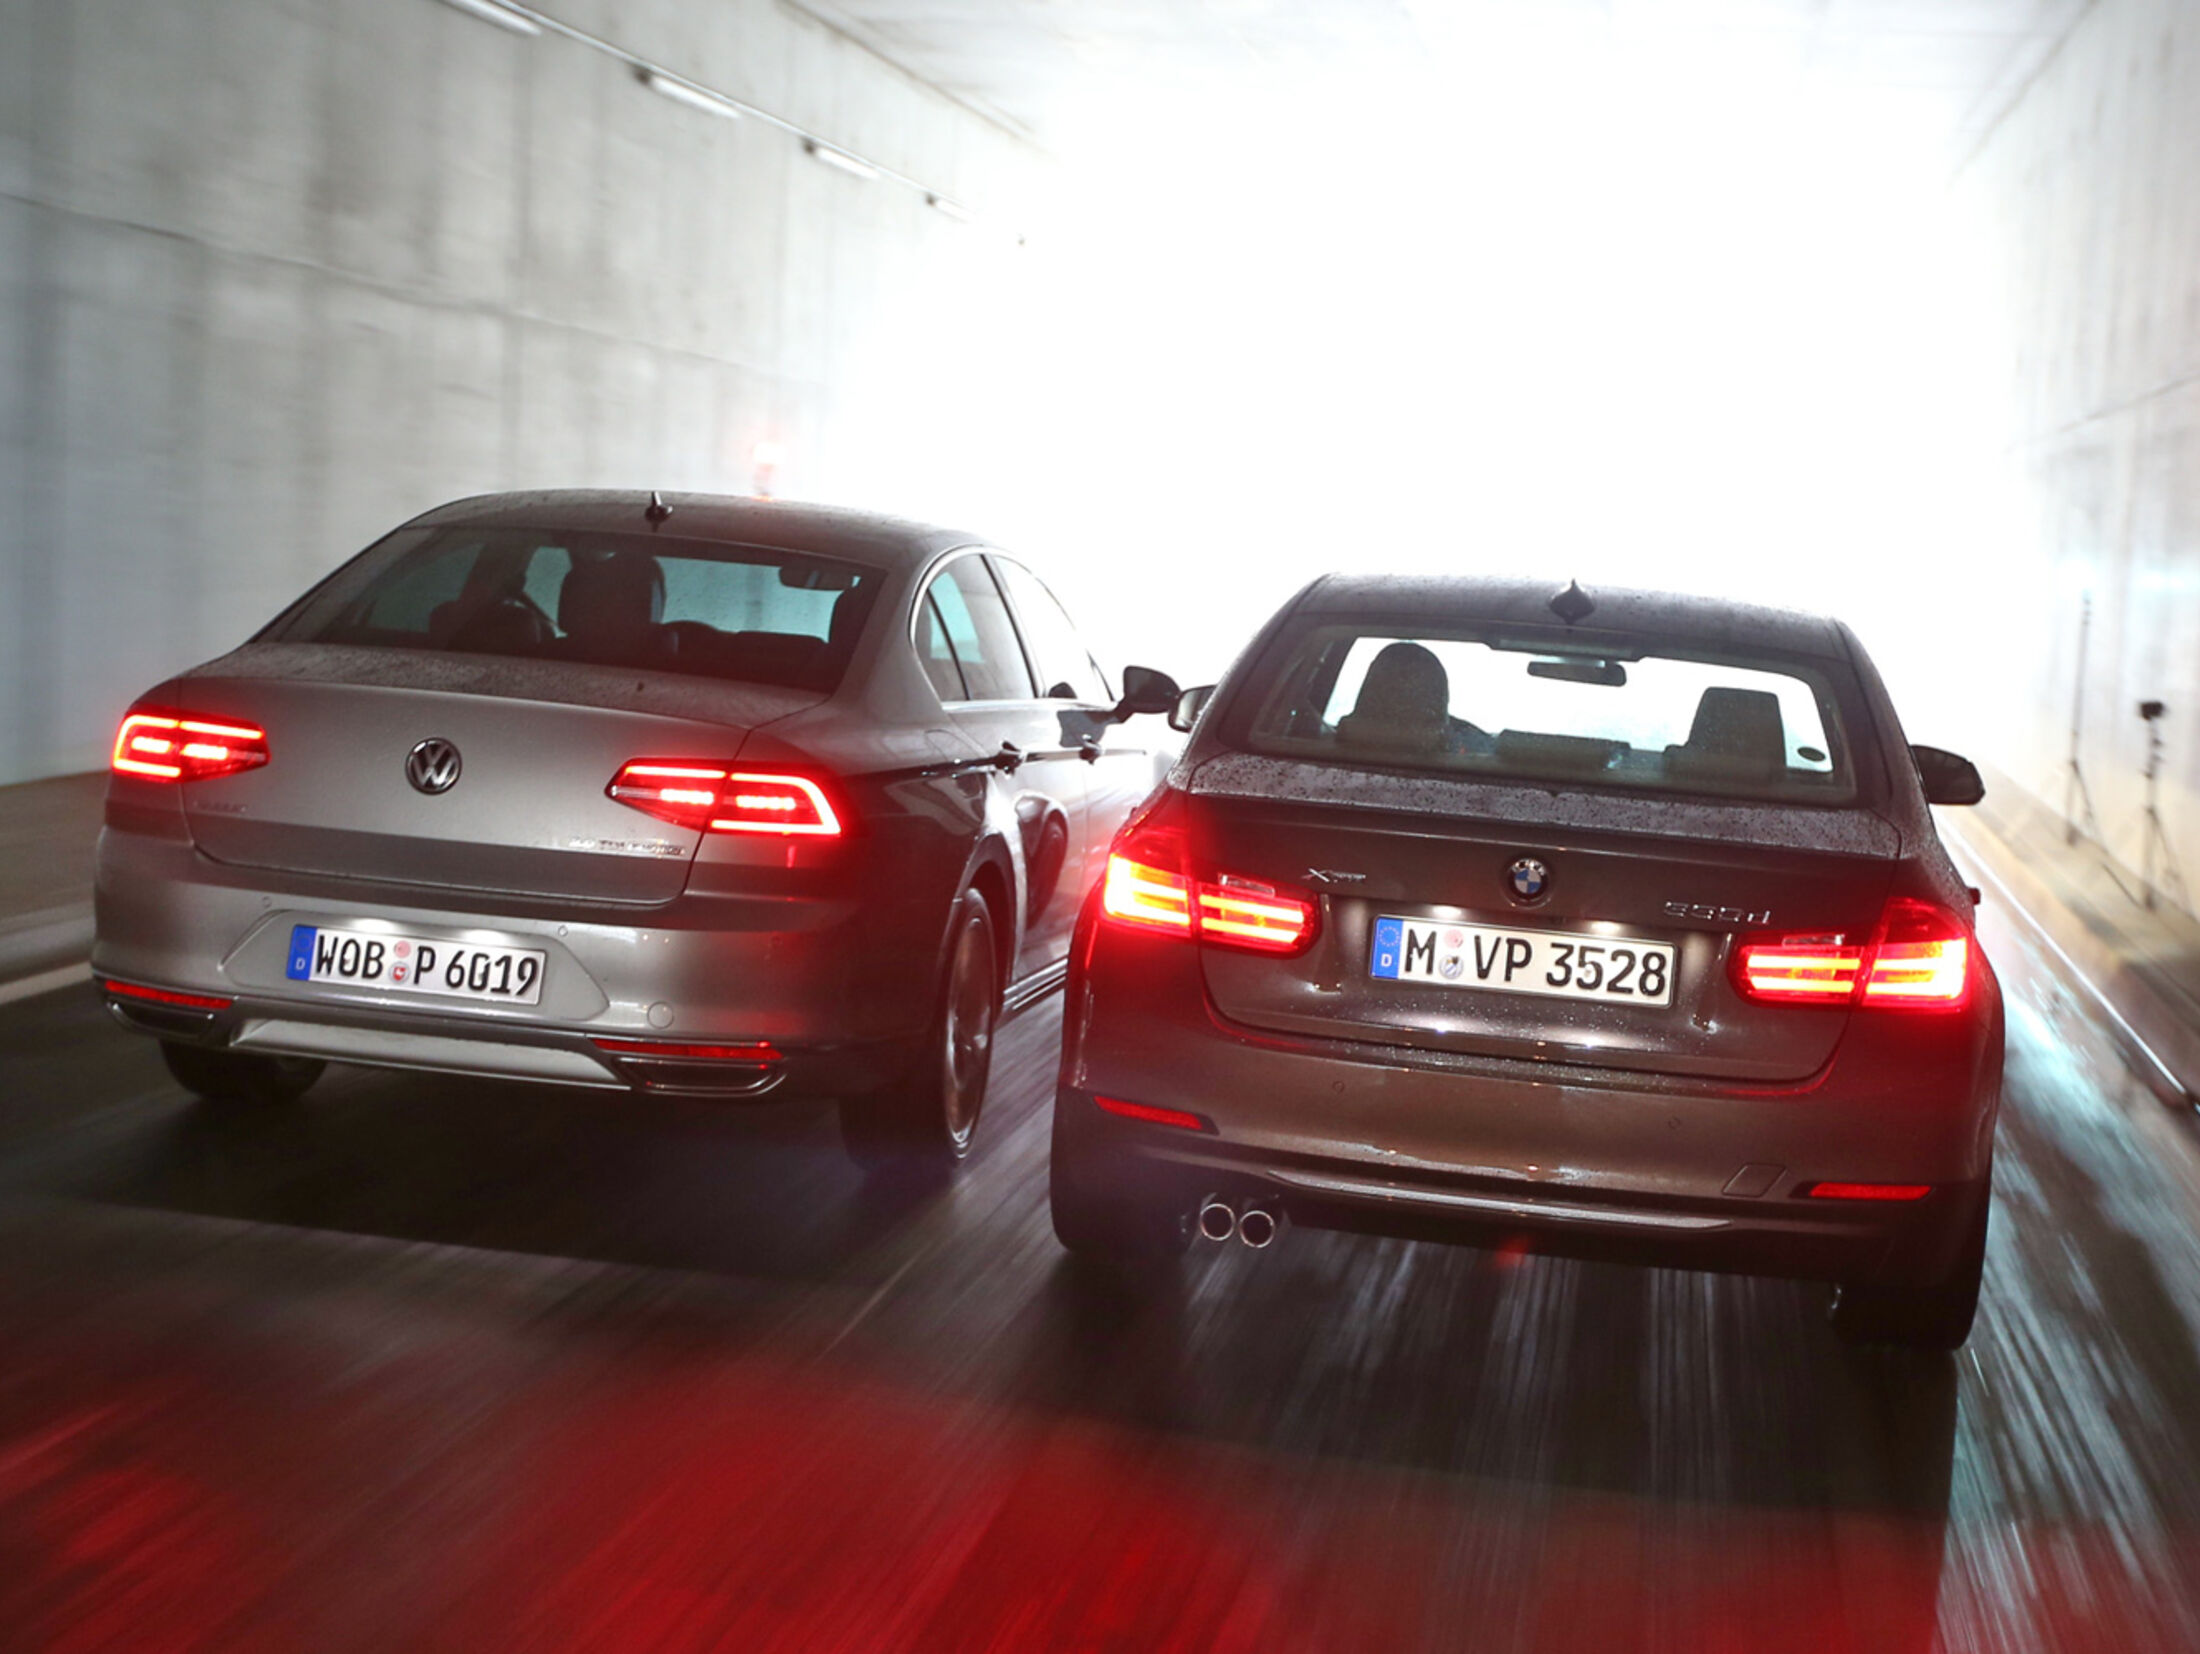 BMW 330d und VW Passat 2.0 TDI: Test auf der Rennstrecke